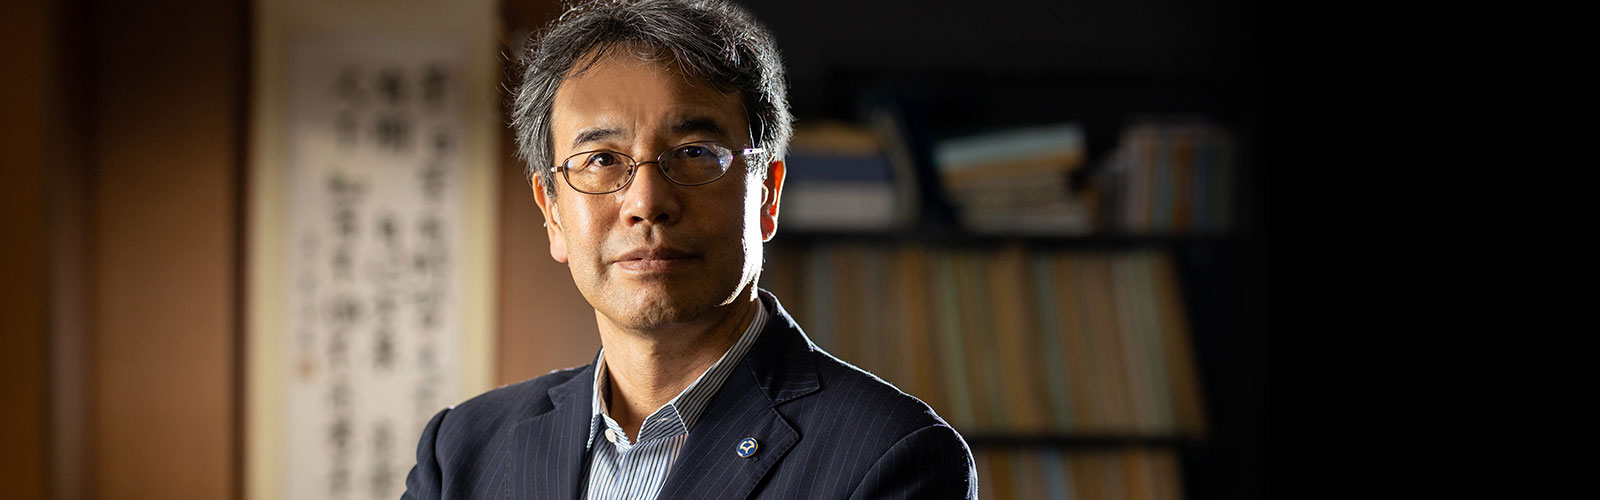 Professor Takashi Nakano